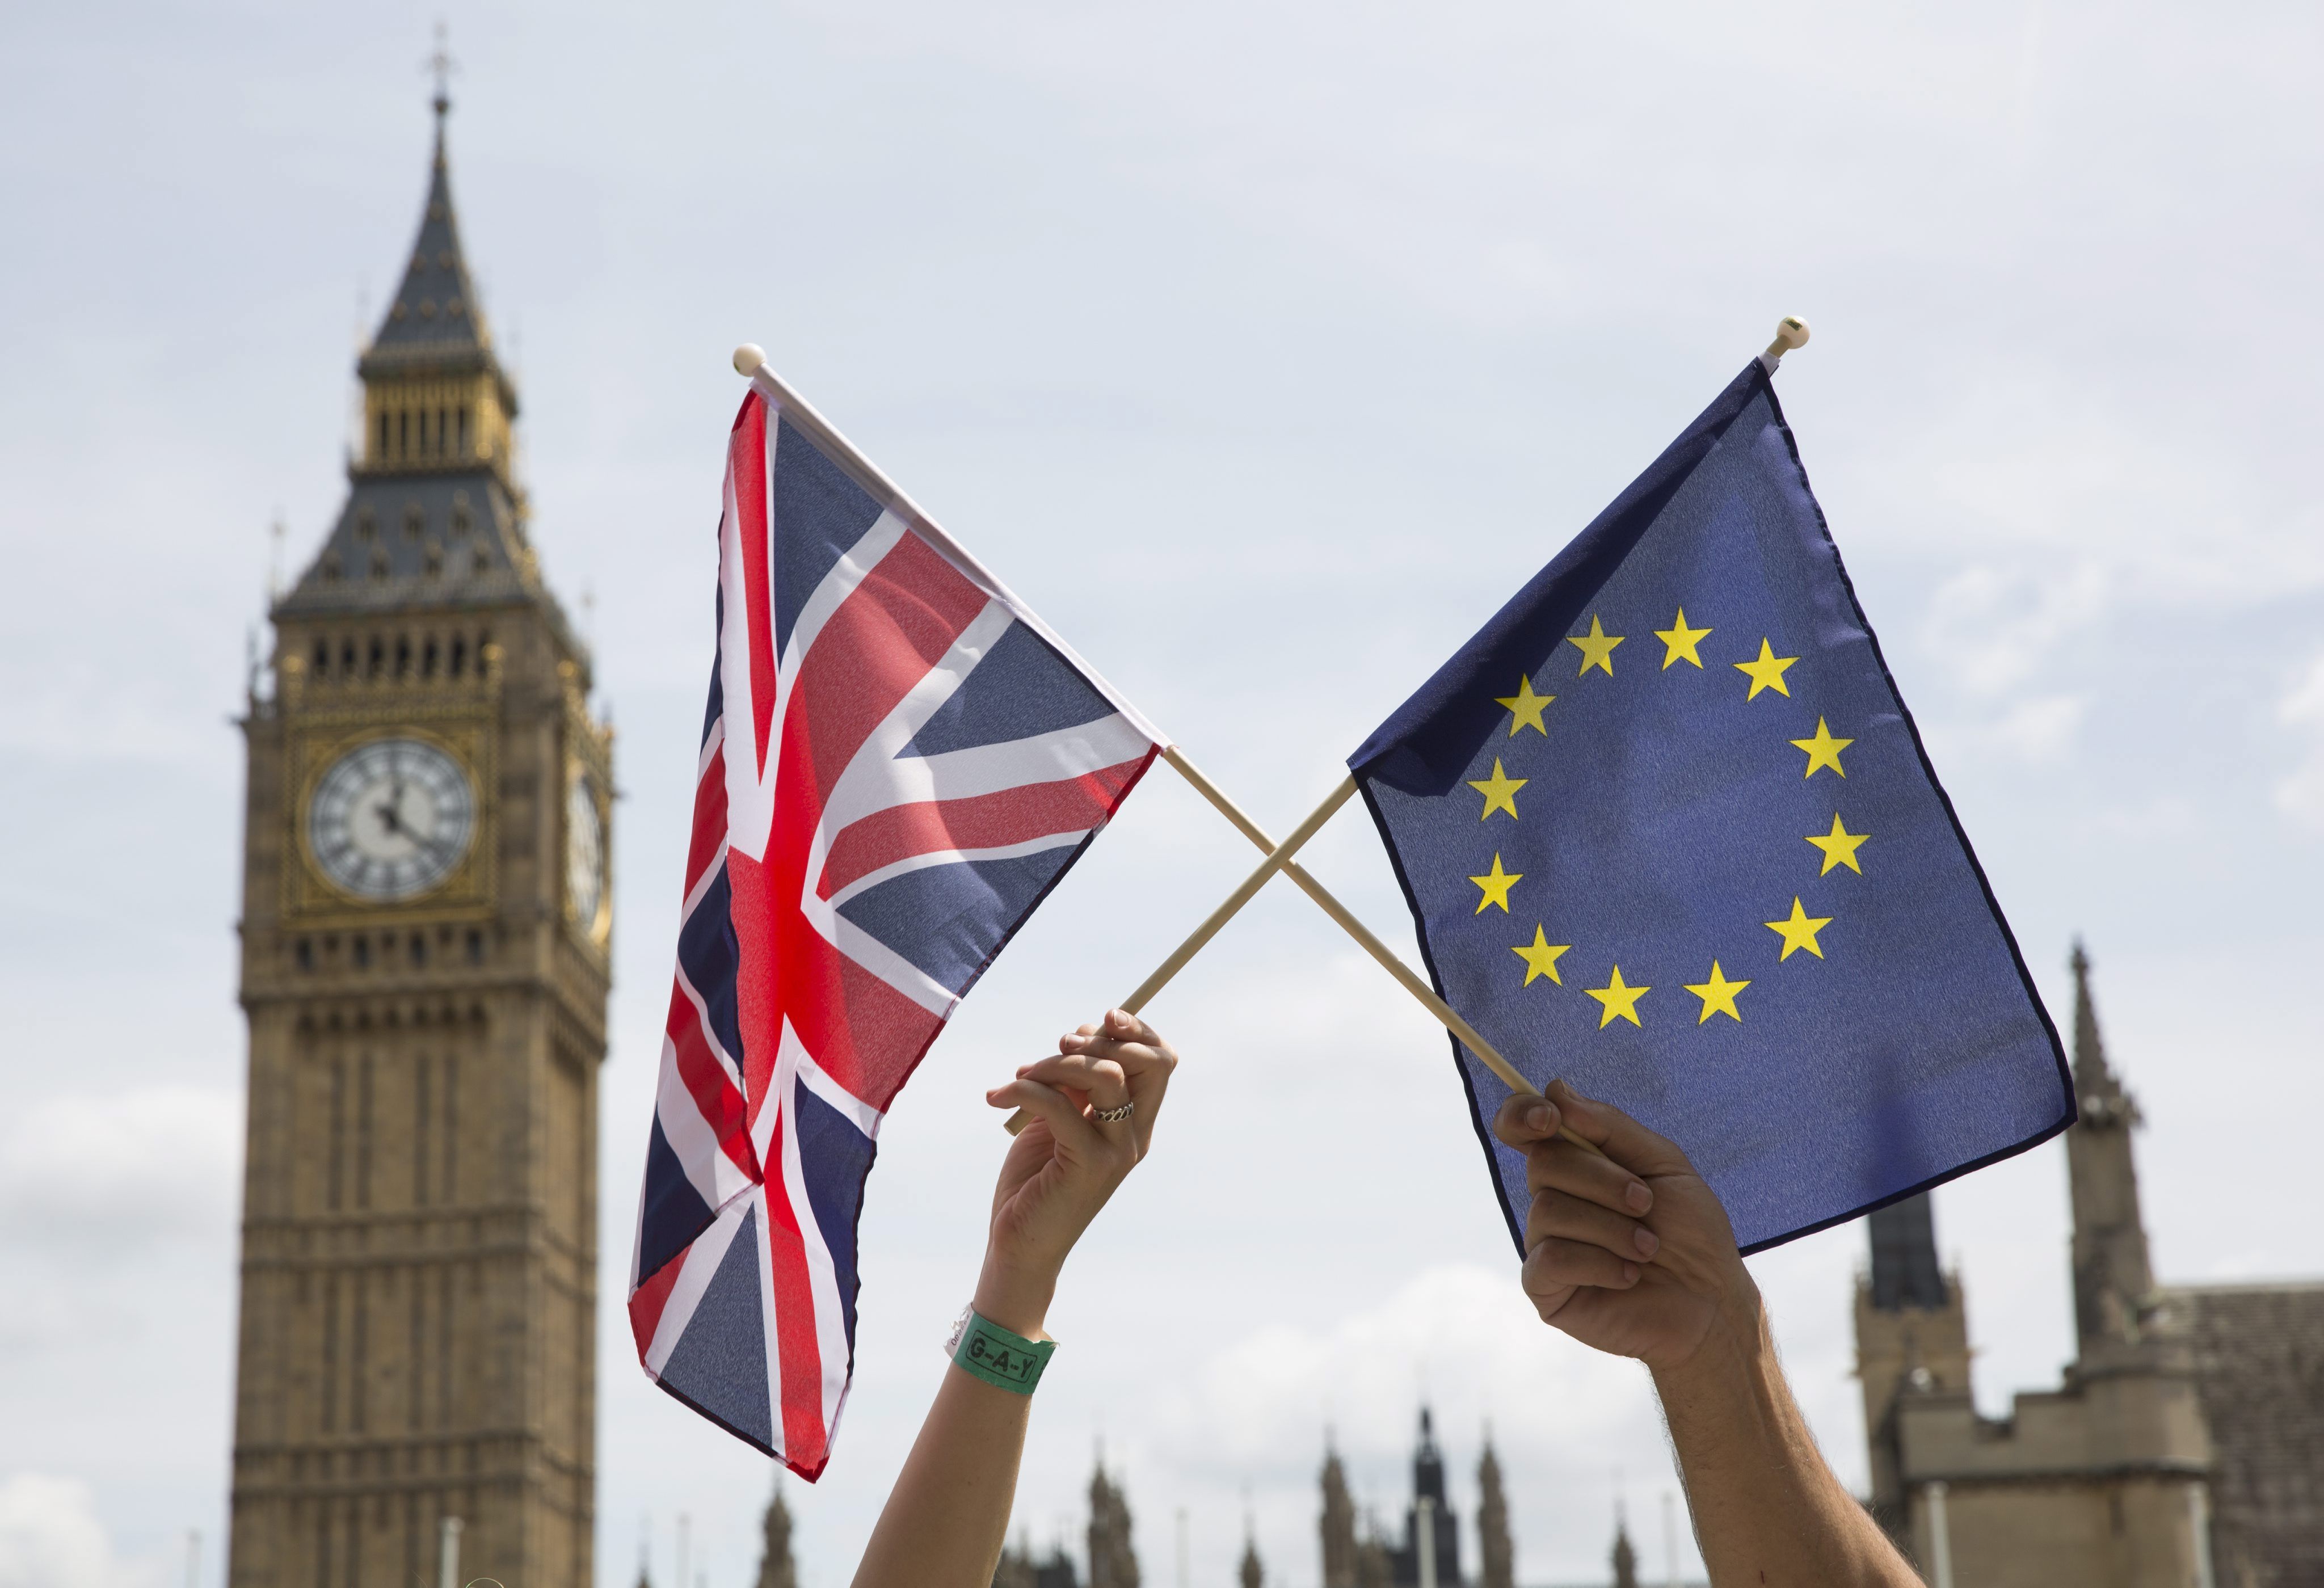 El 'Brexit' y el 'Bremain' empatados a 3 días del referéndum